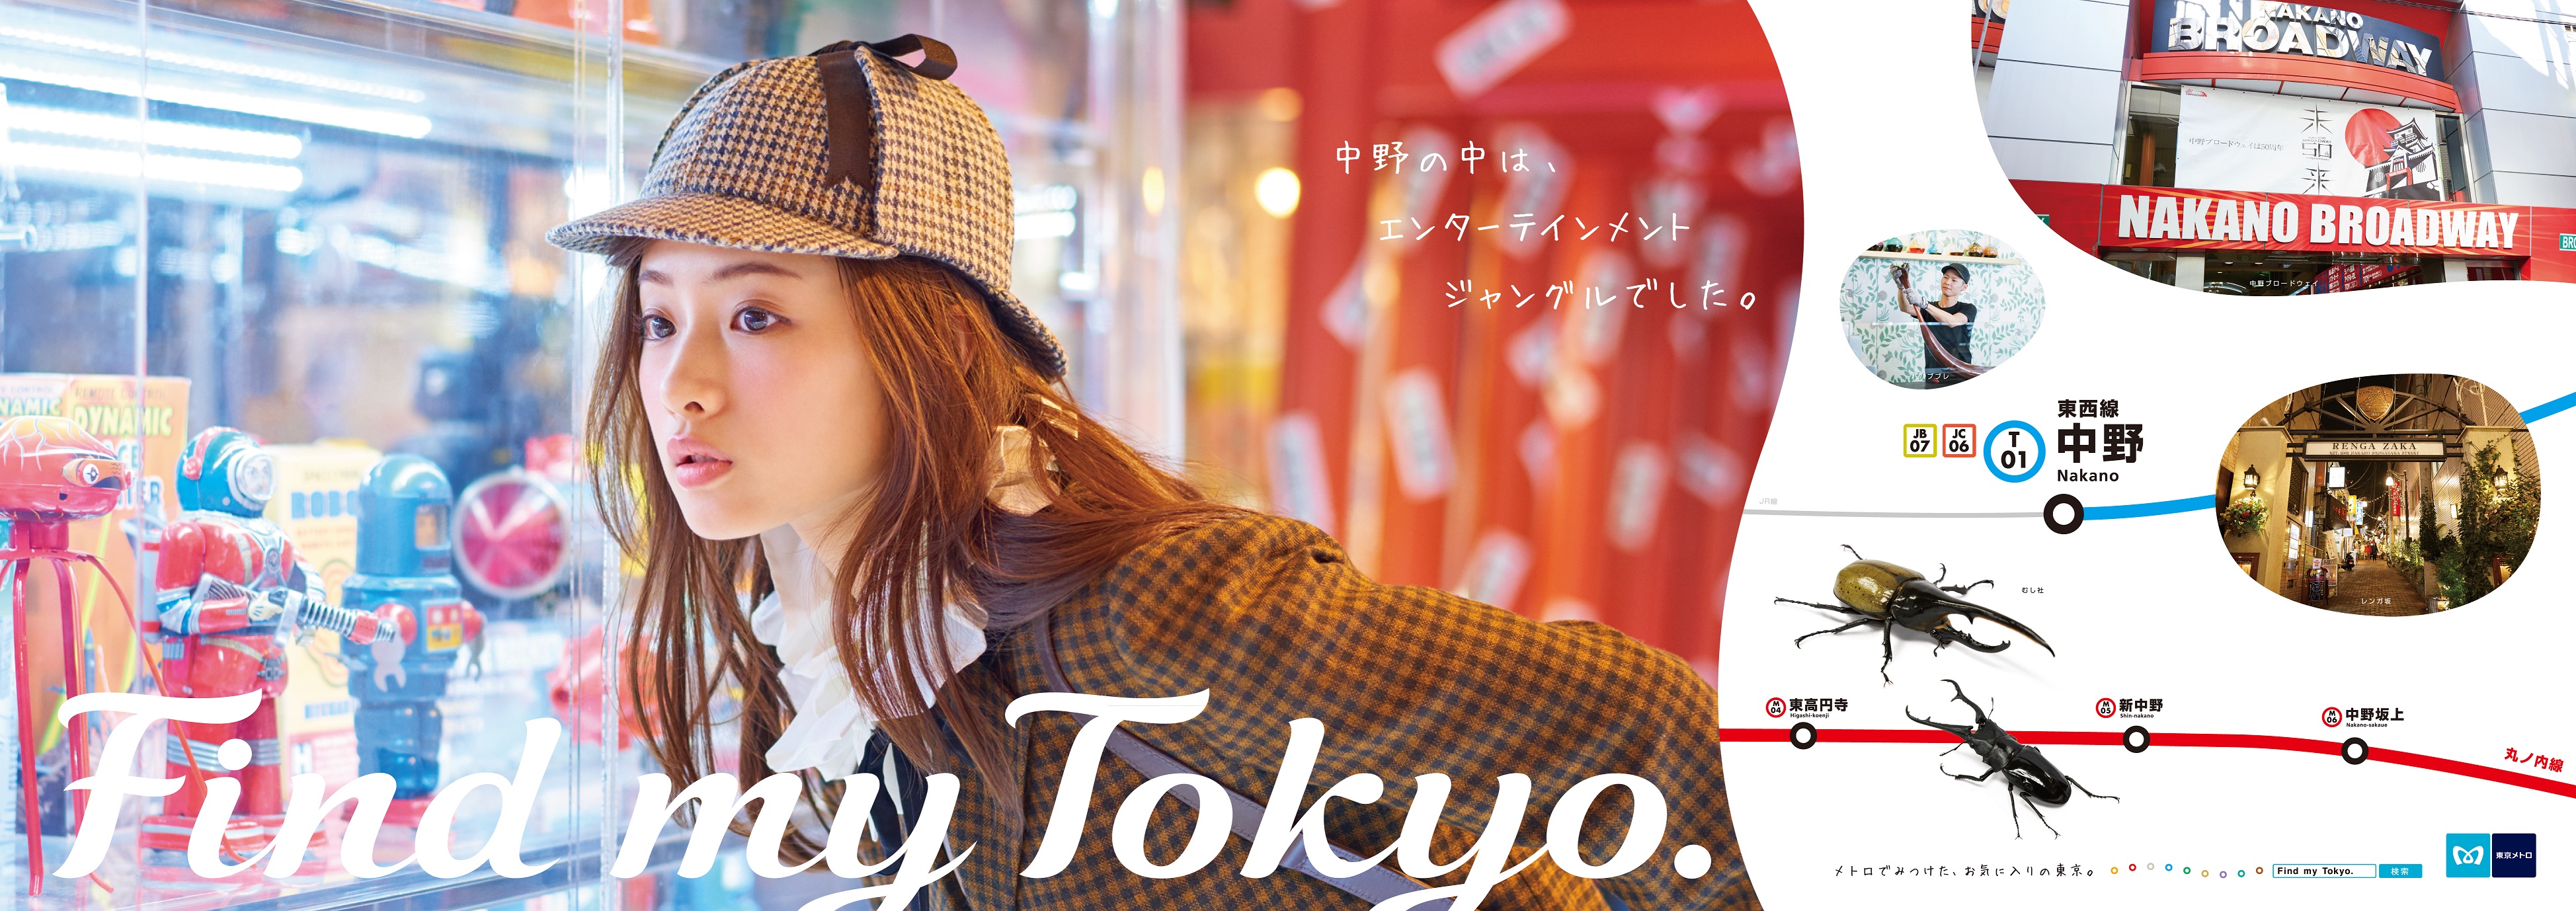 石原さとみさん出演・東京メトロ「Find my Tokyo.」 1月7日（土）より 